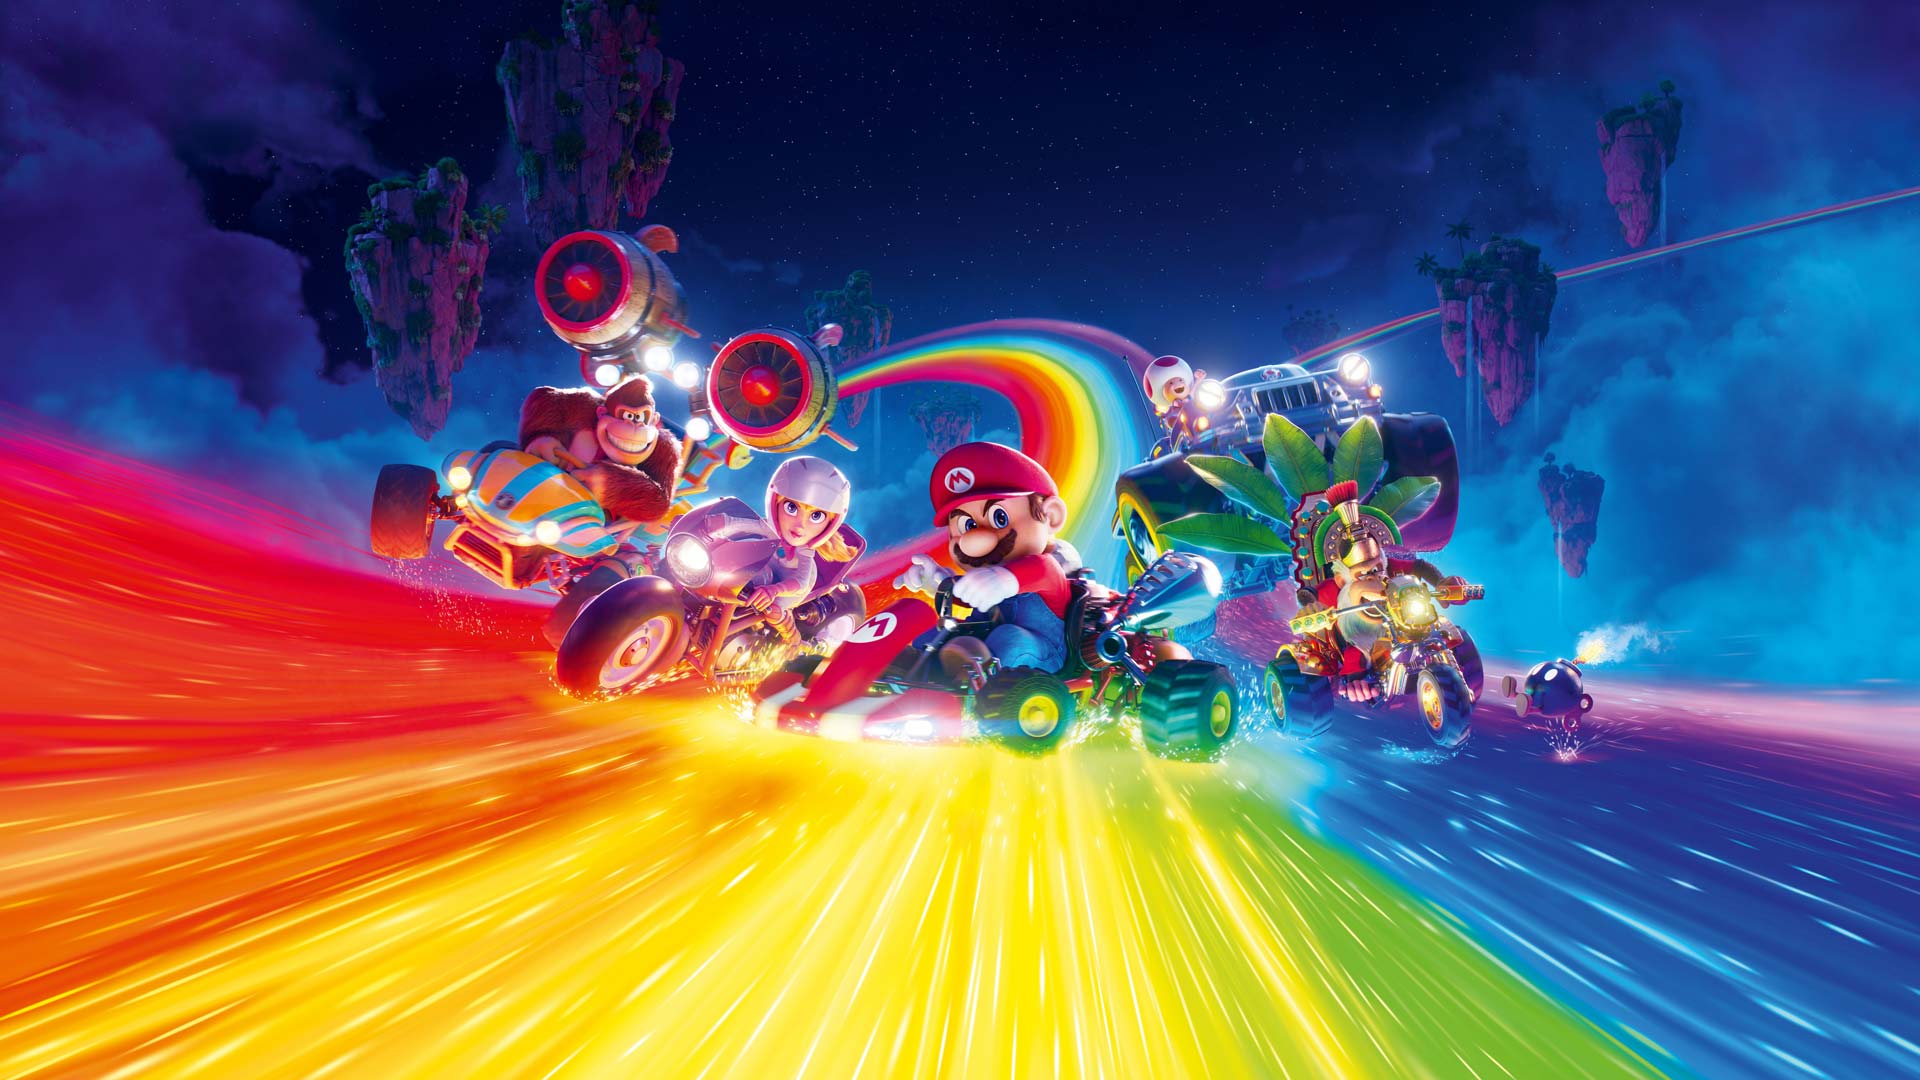 ماریو و دیگر شخصیتها در حال عبور از مسیر رنگین کمان از انیمیشن برادران سوپر ماریو